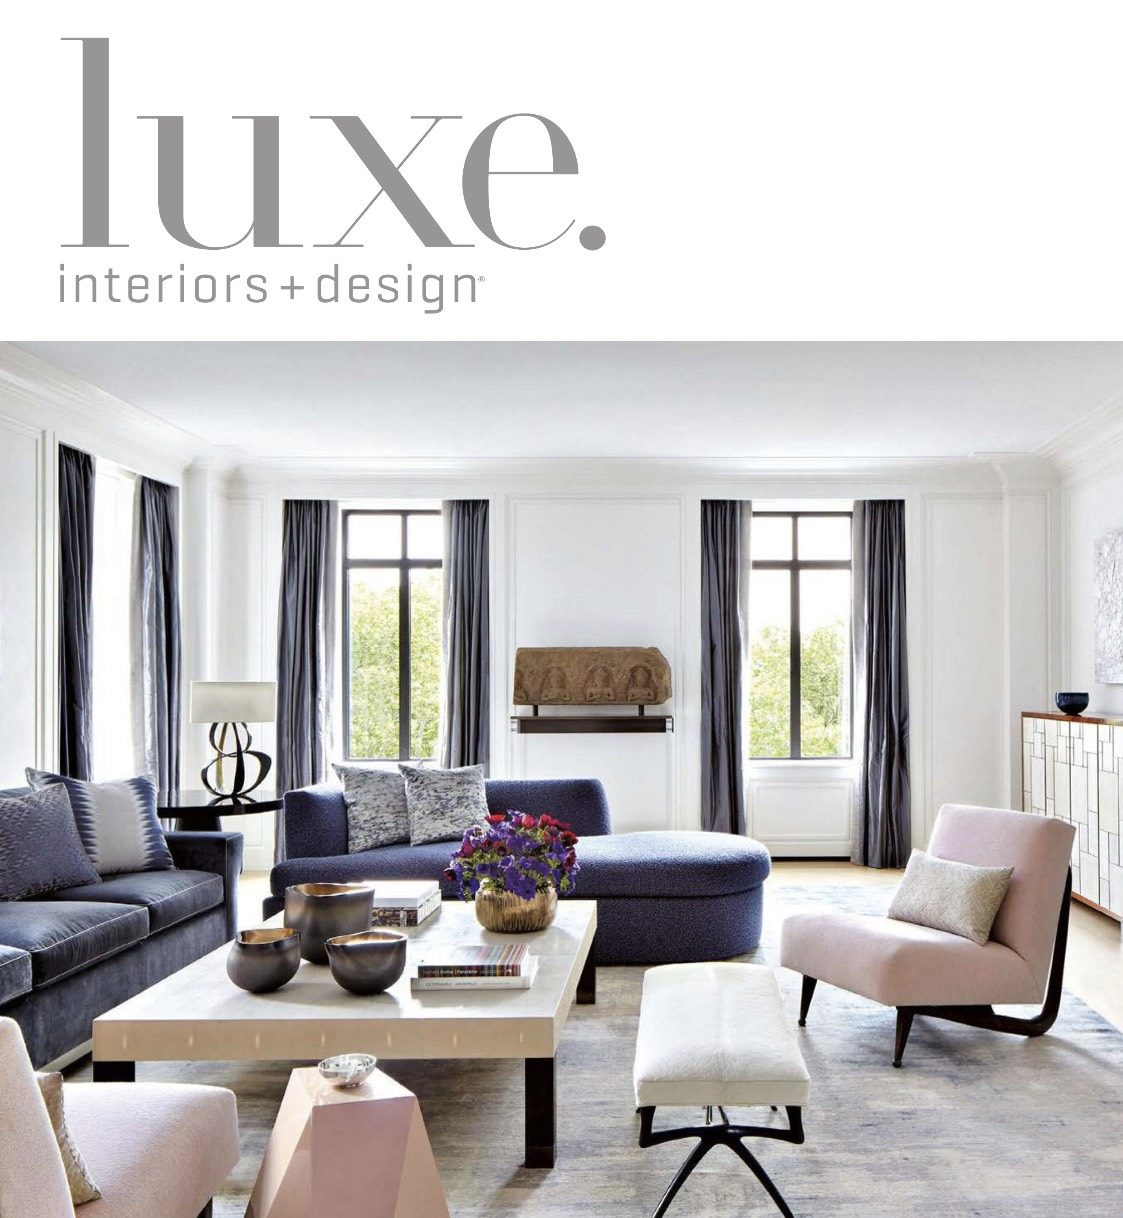 Luxe. interiors + design